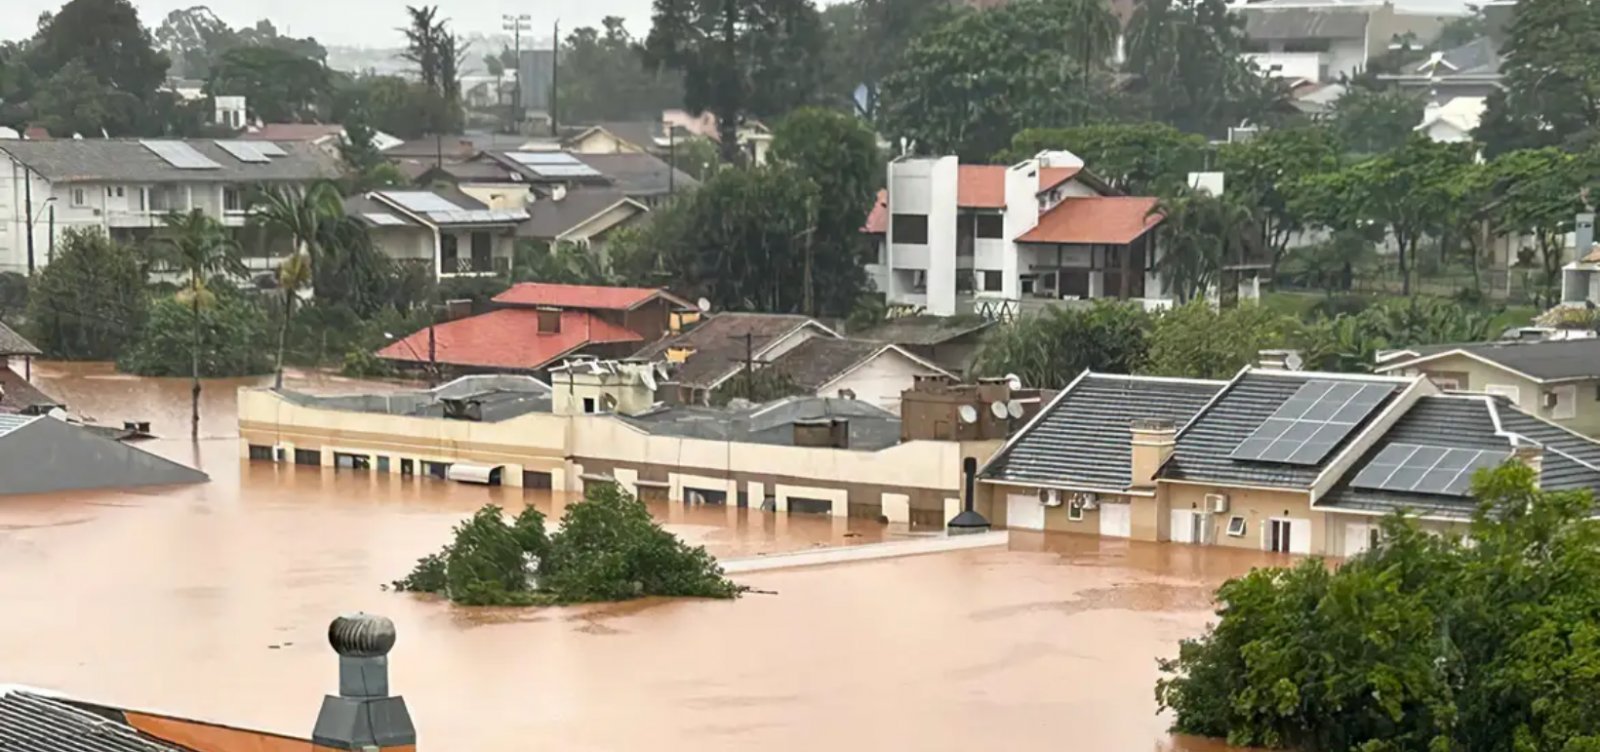  Brasil teve R$ 139,7 bilhões em perdas causadas pelas chuvas desde 2015